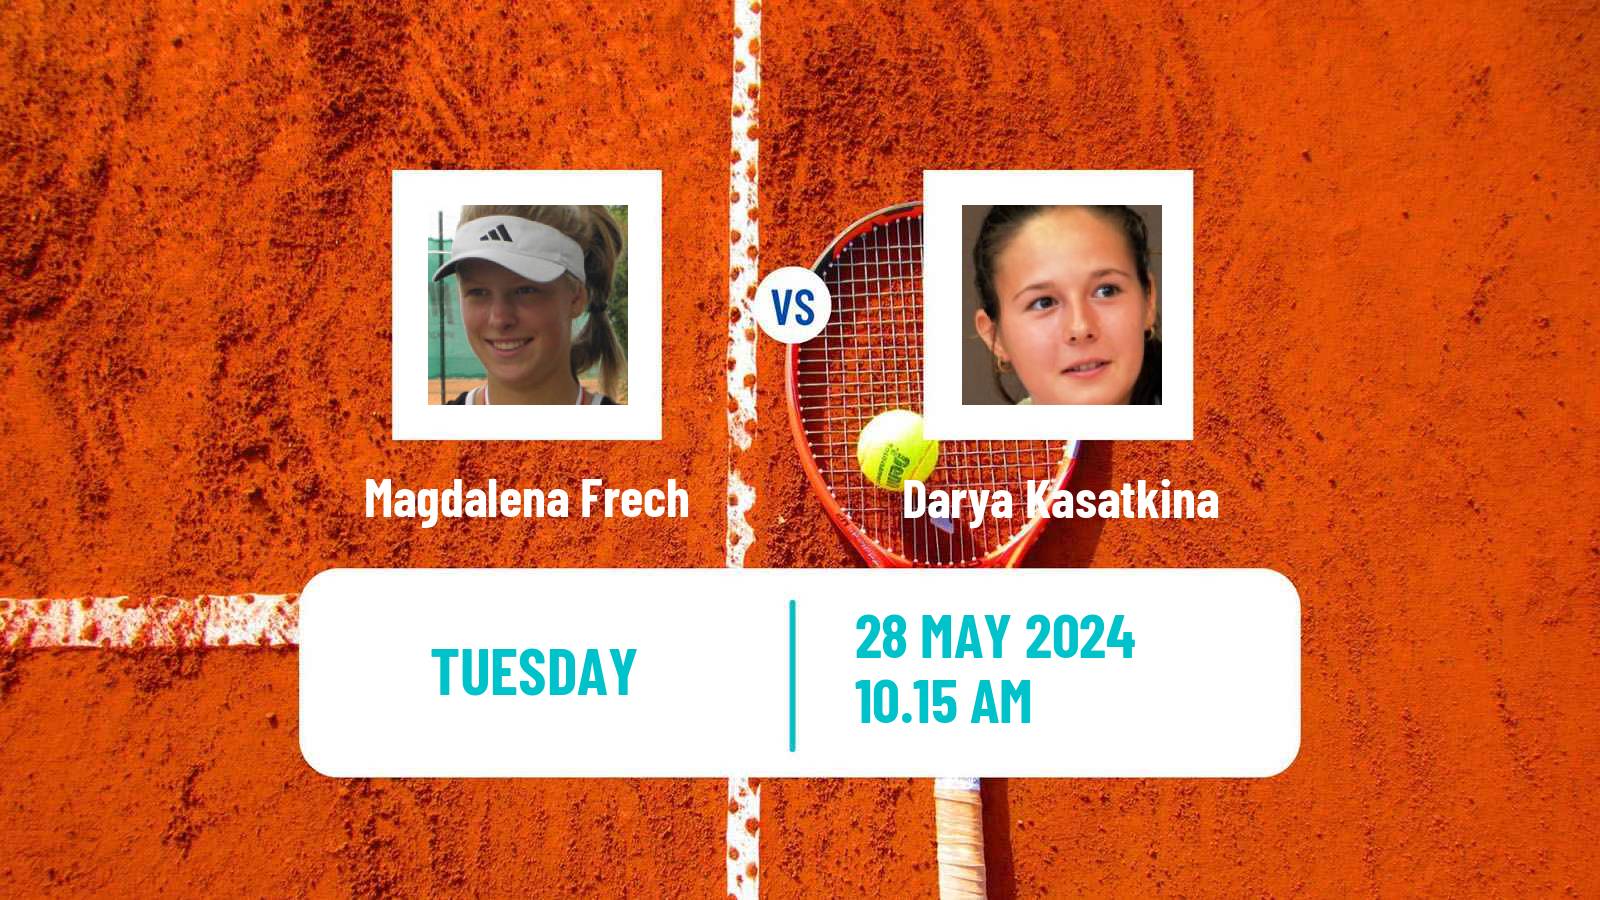 Tennis WTA Roland Garros Magdalena Frech - Darya Kasatkina